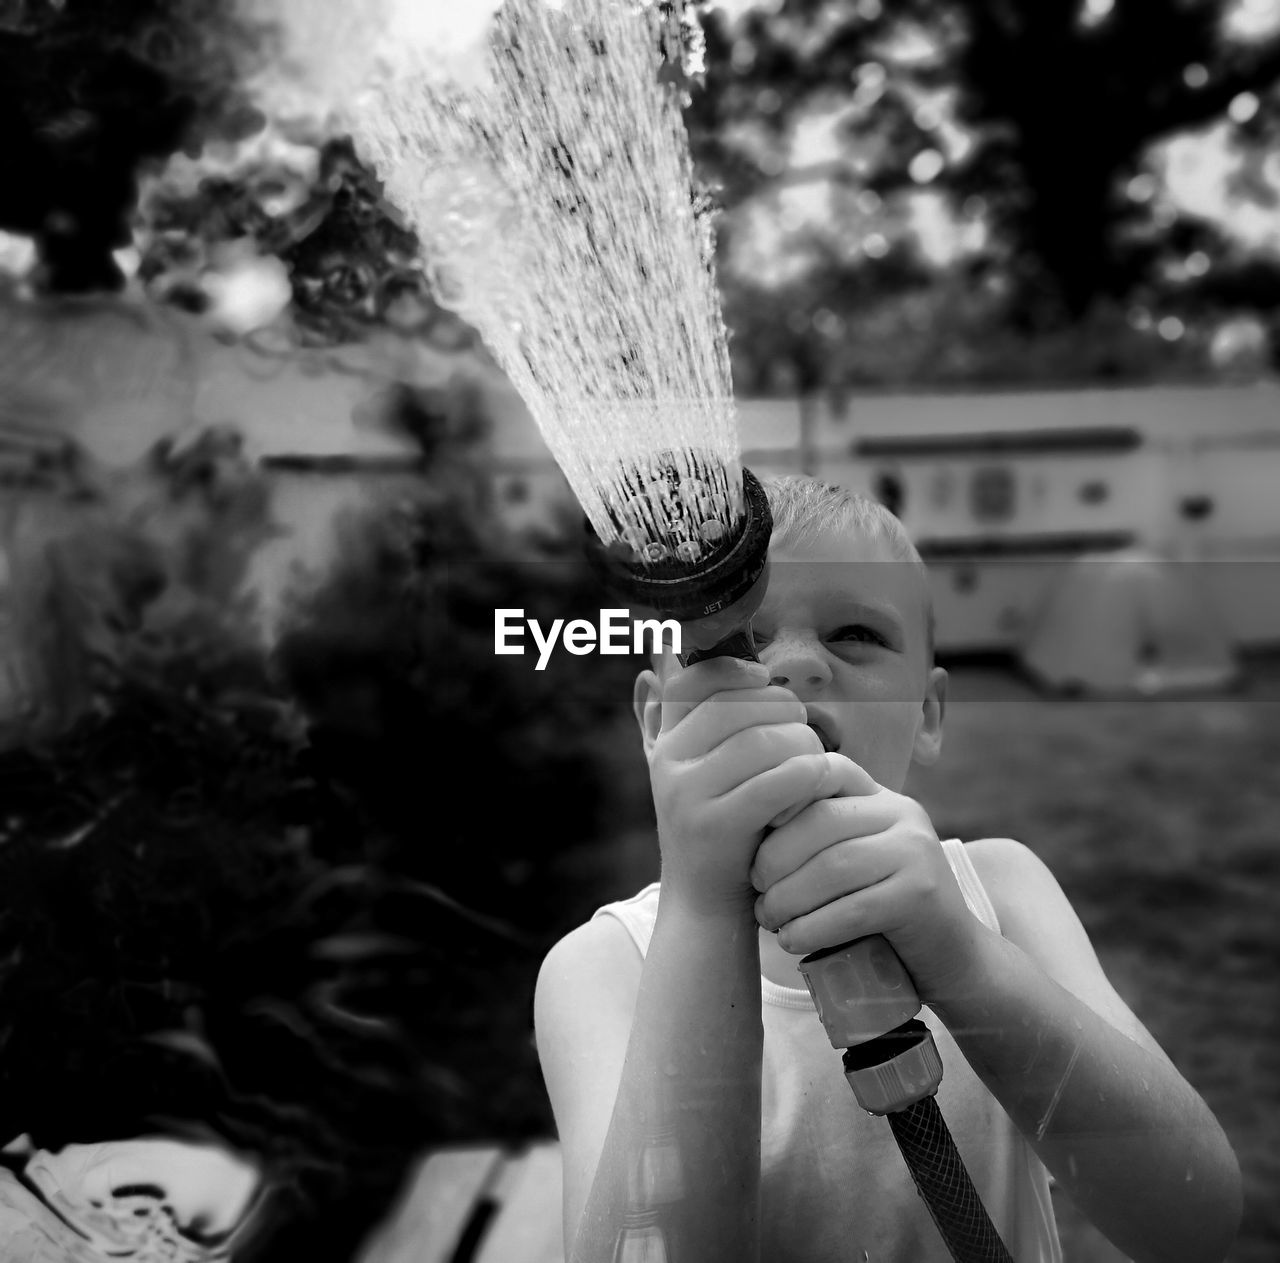 Boy spraying water with garden hose